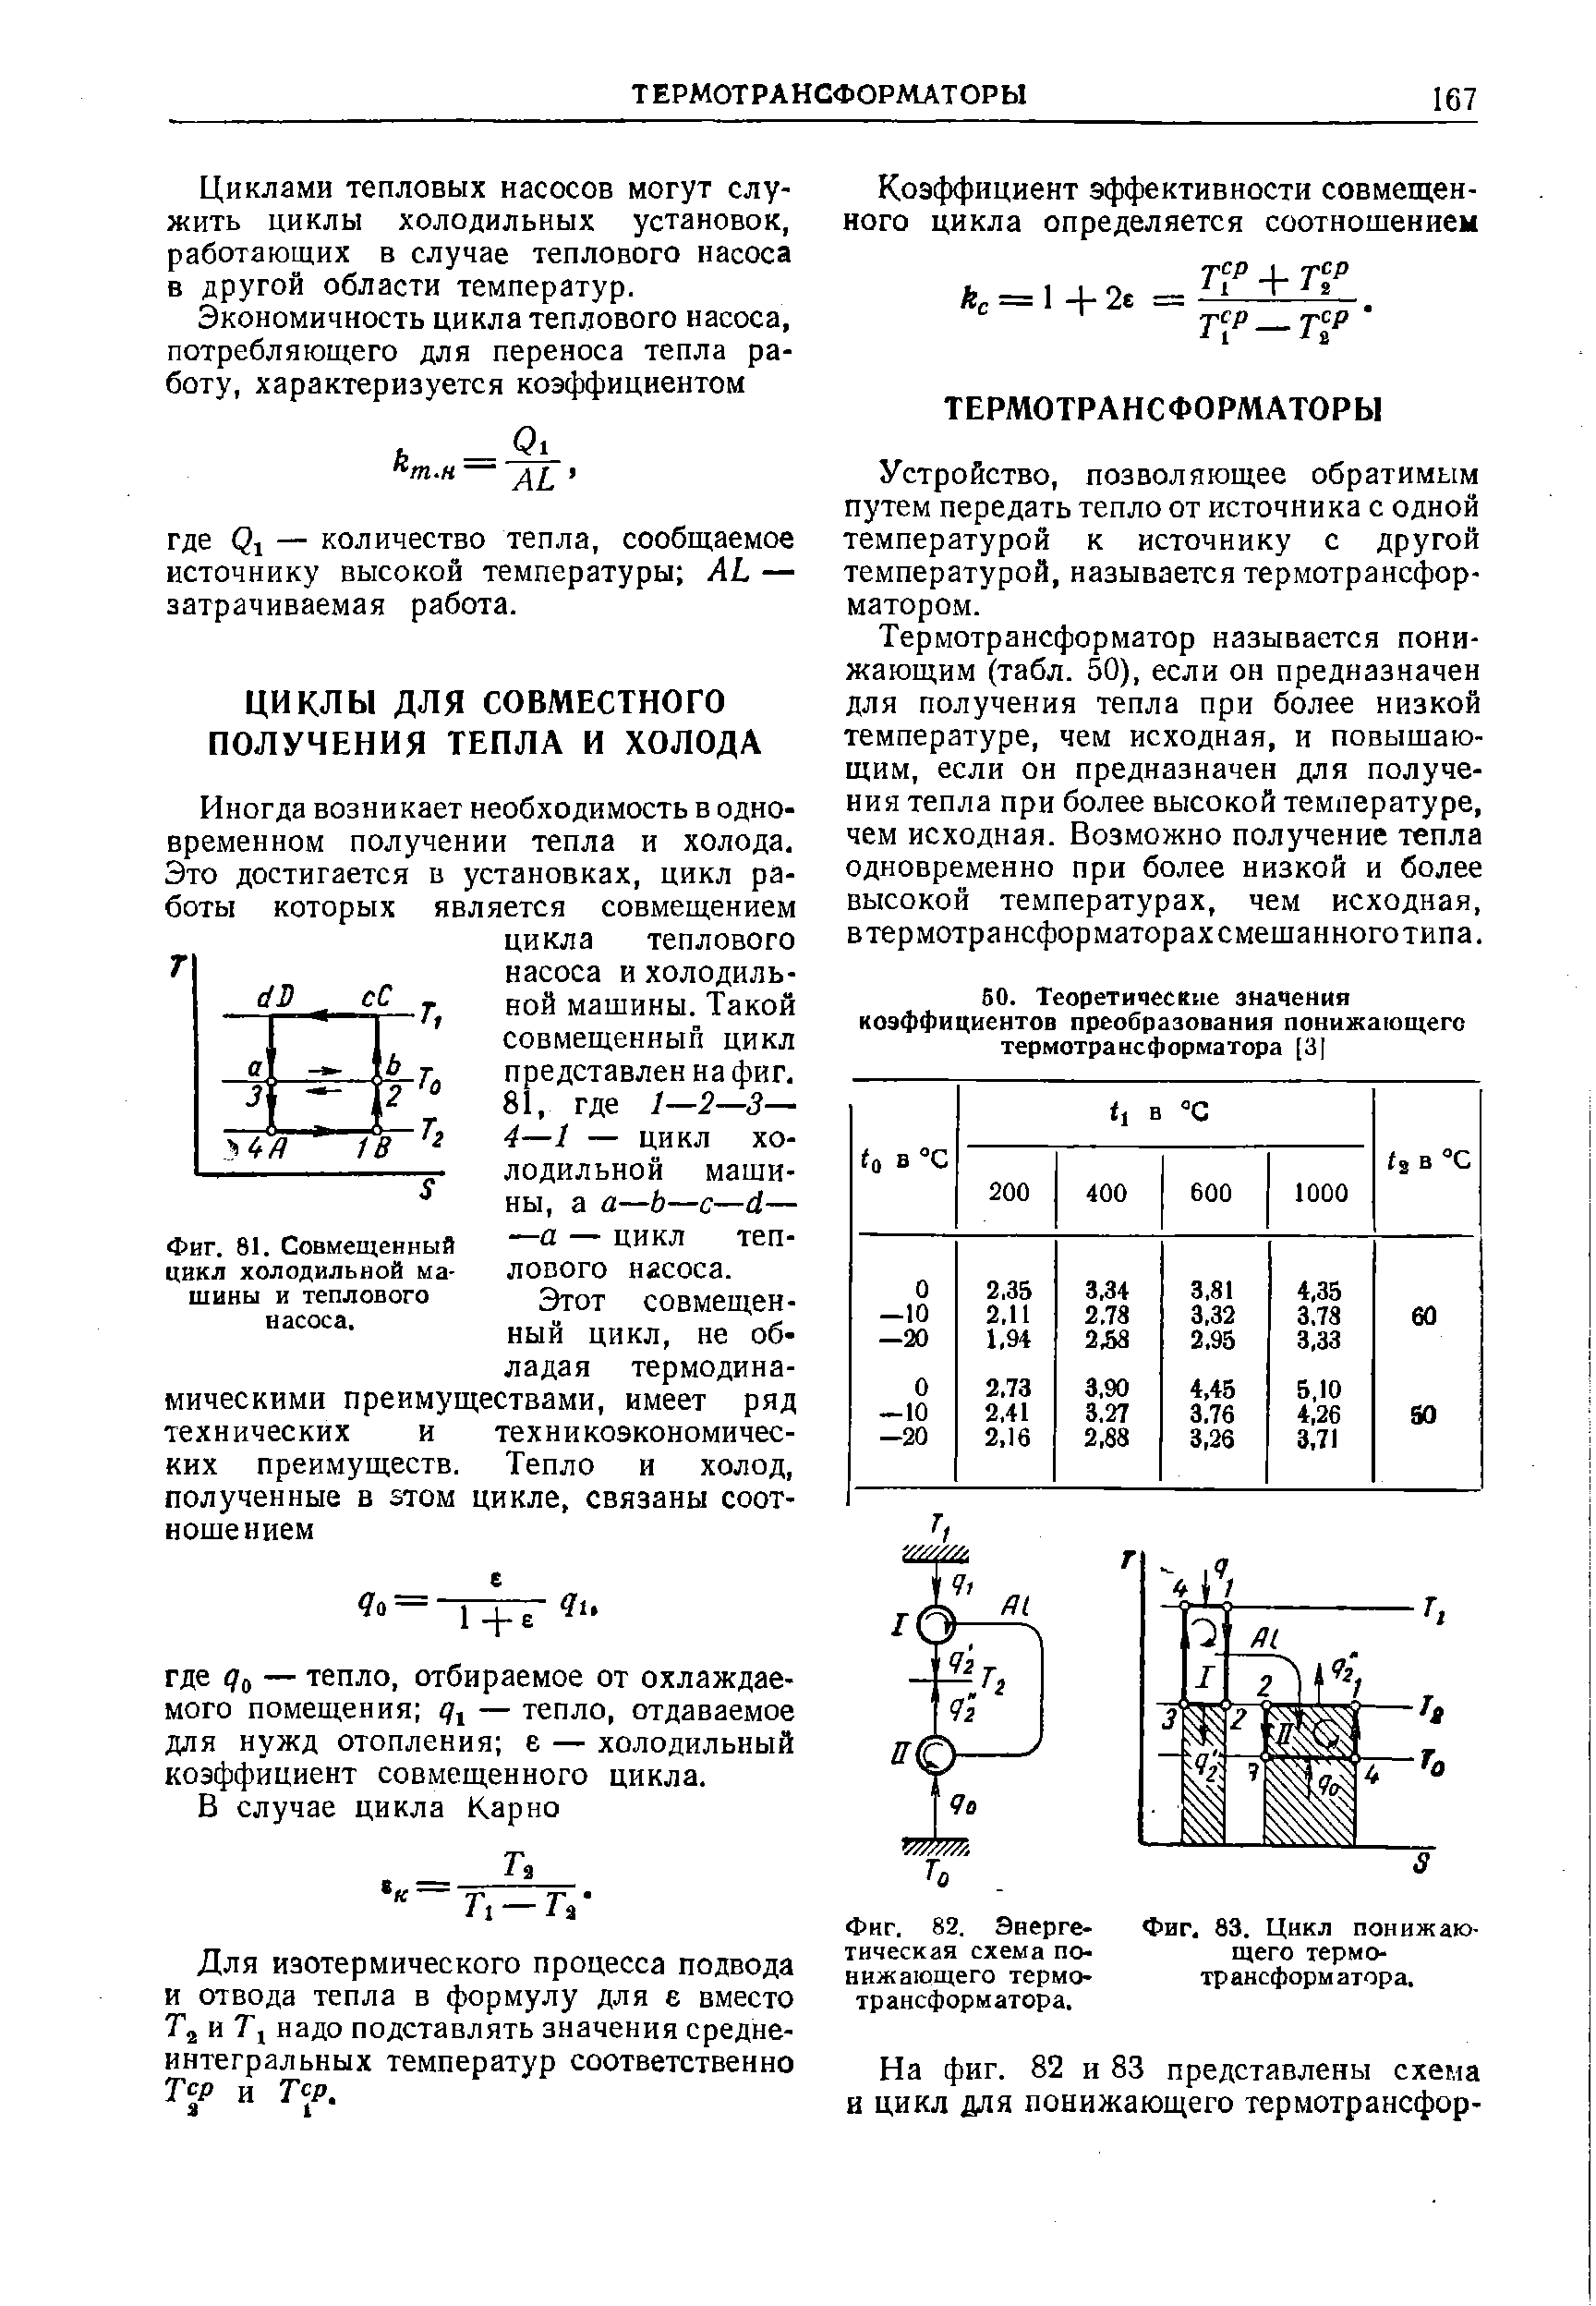 Фиг. 82. Энерге-тическая схема понижающего термотрансформатора.
